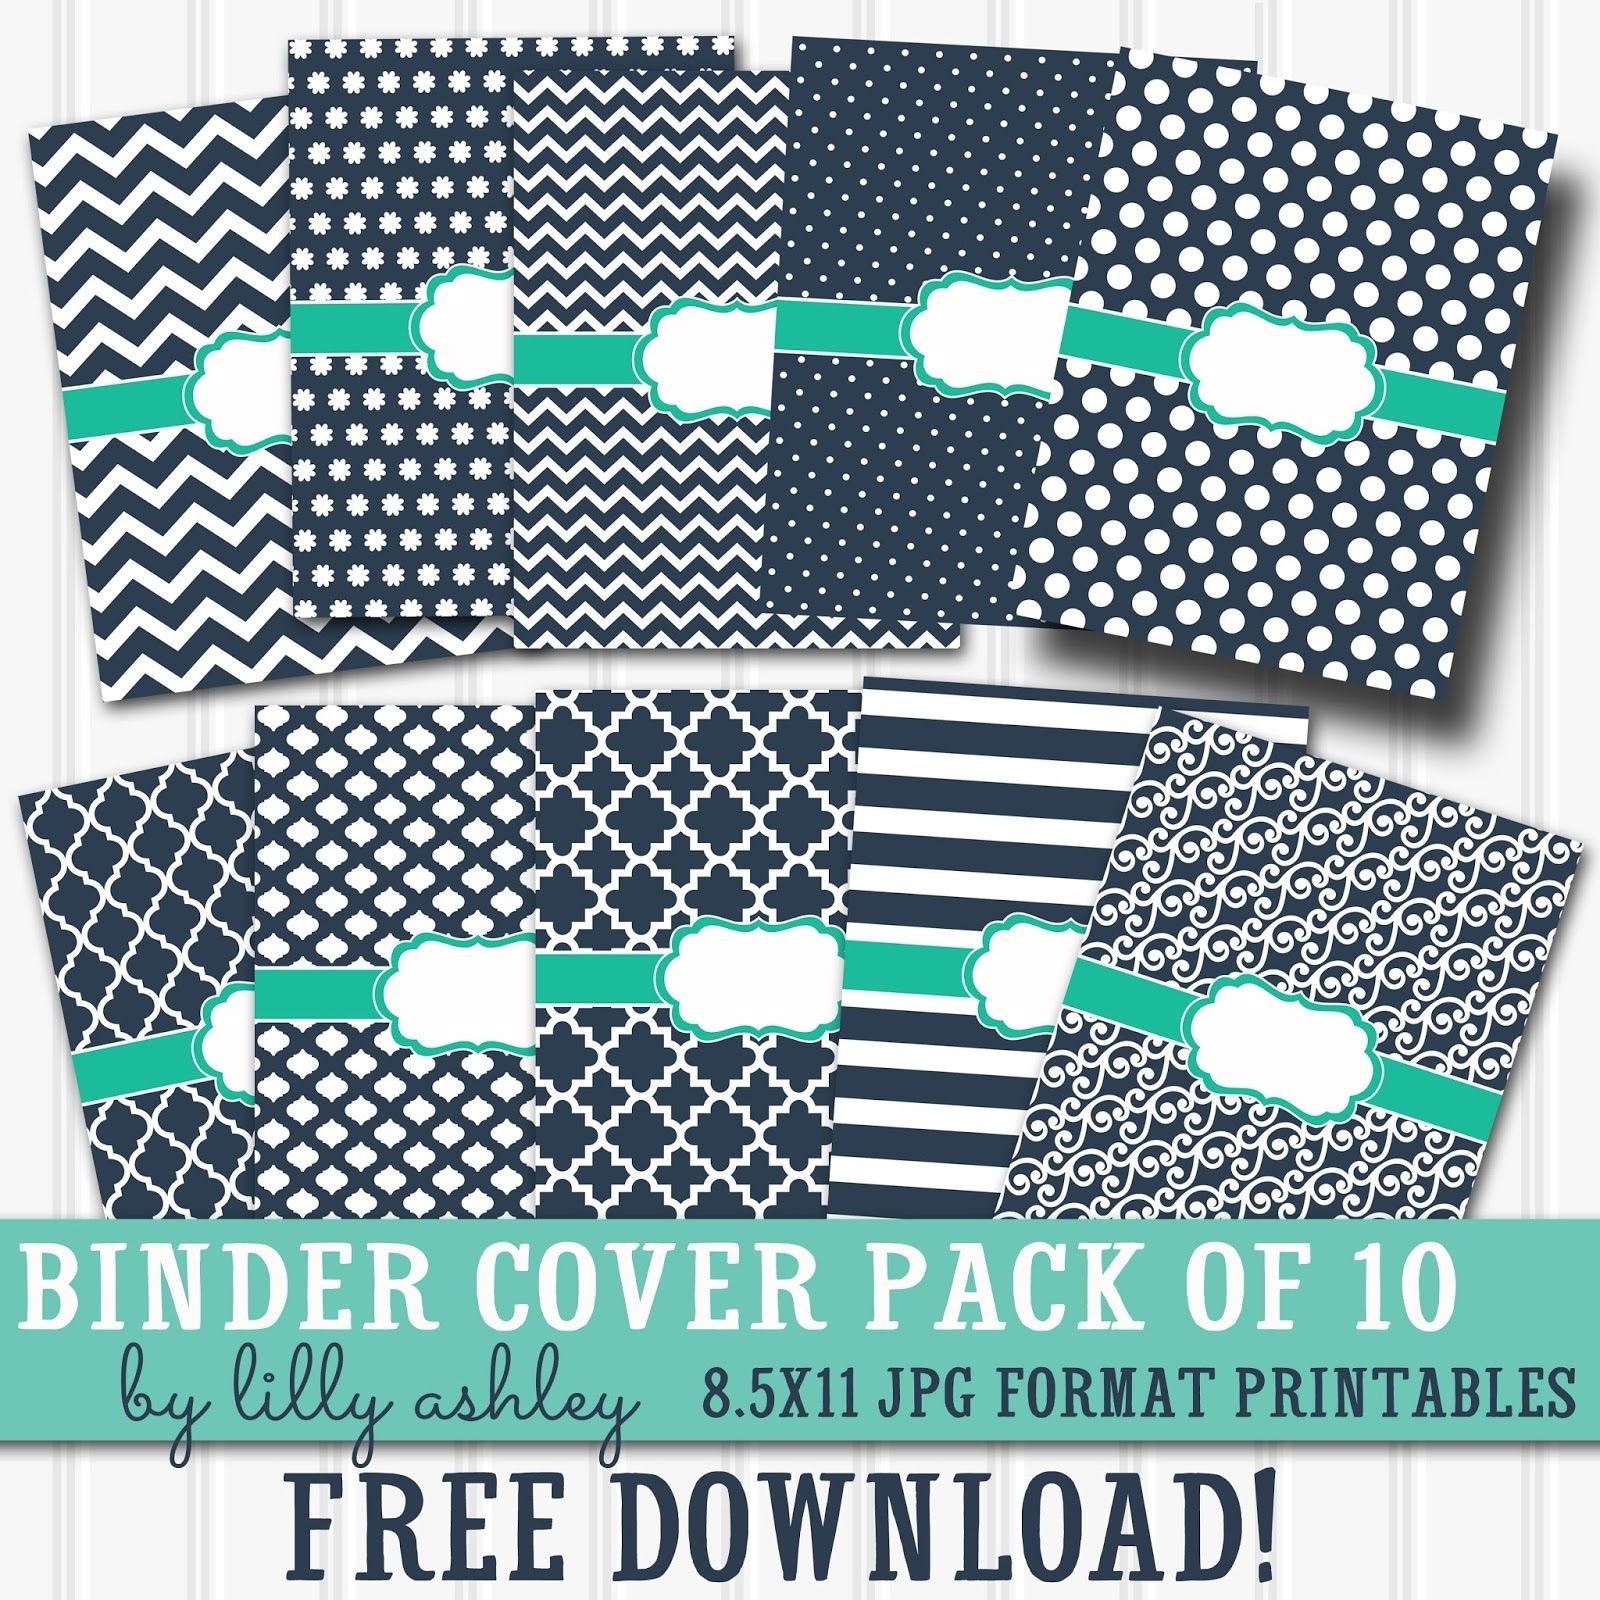 Free Printable Binder Covers Pack Of 10 | Diy School Supplies - Free Printable Binder Covers